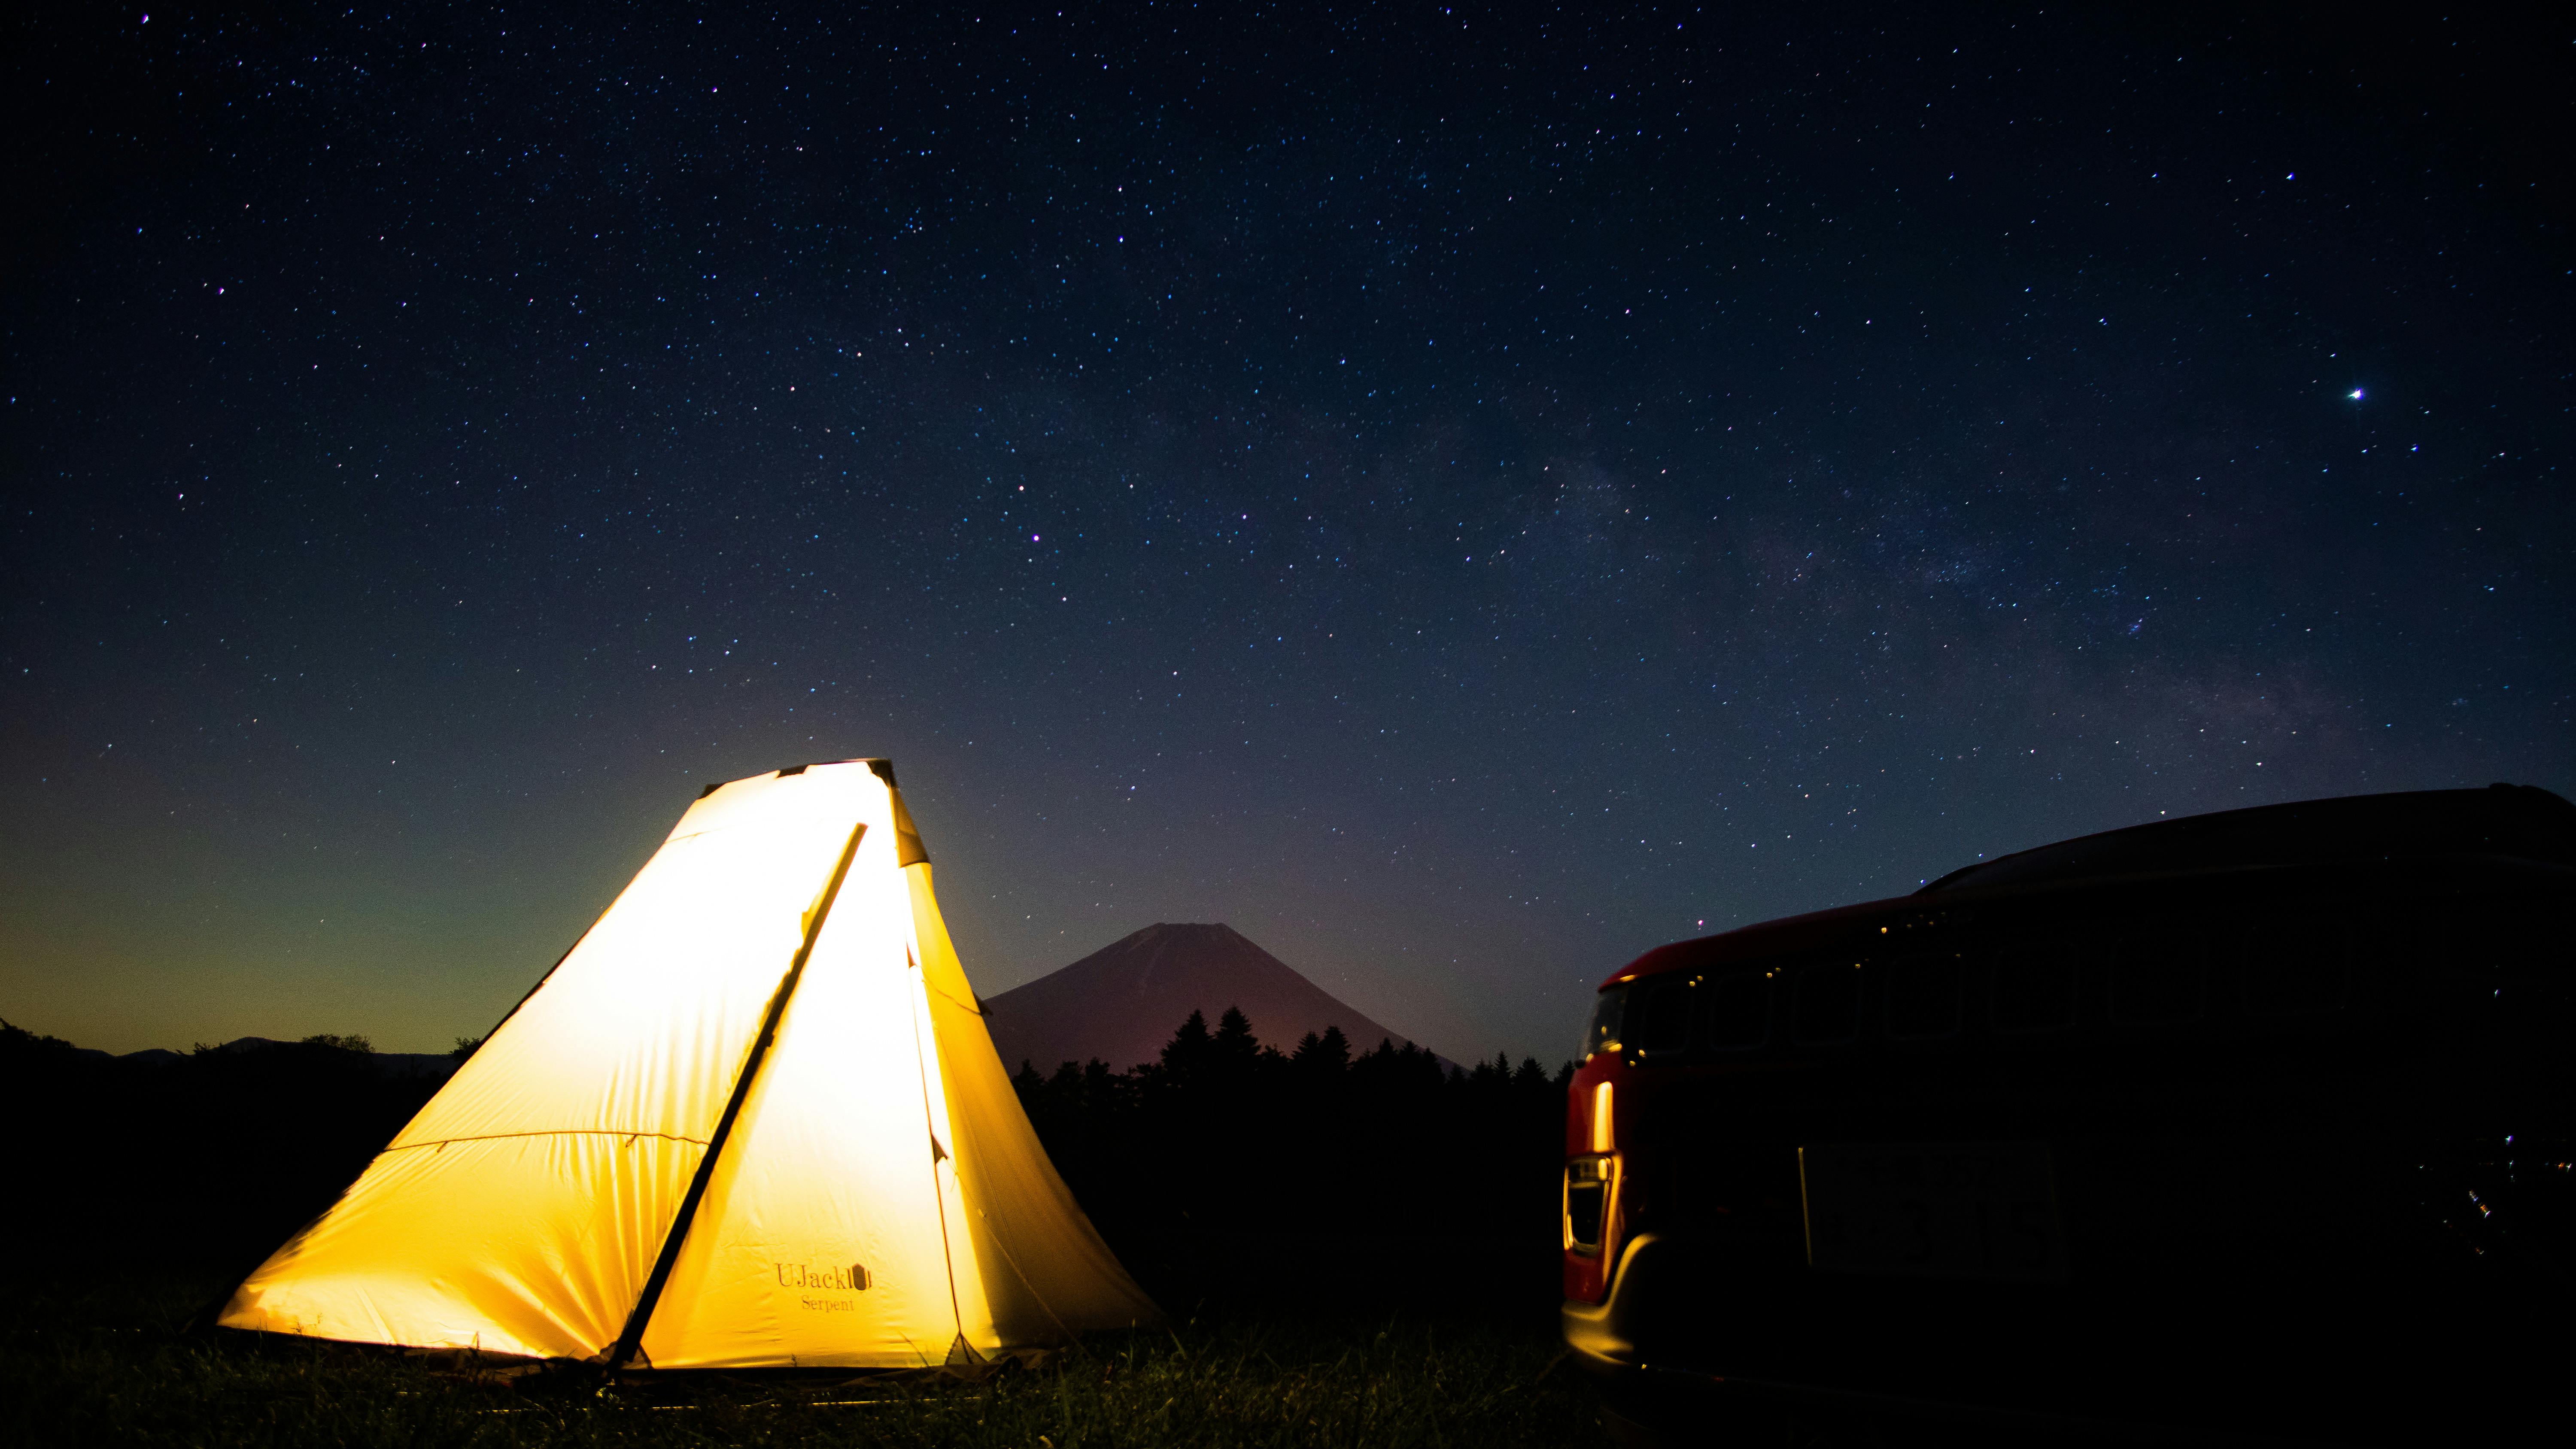 新型テント！ソロキャンプ向けに開発されたワンポールテント！先行発売